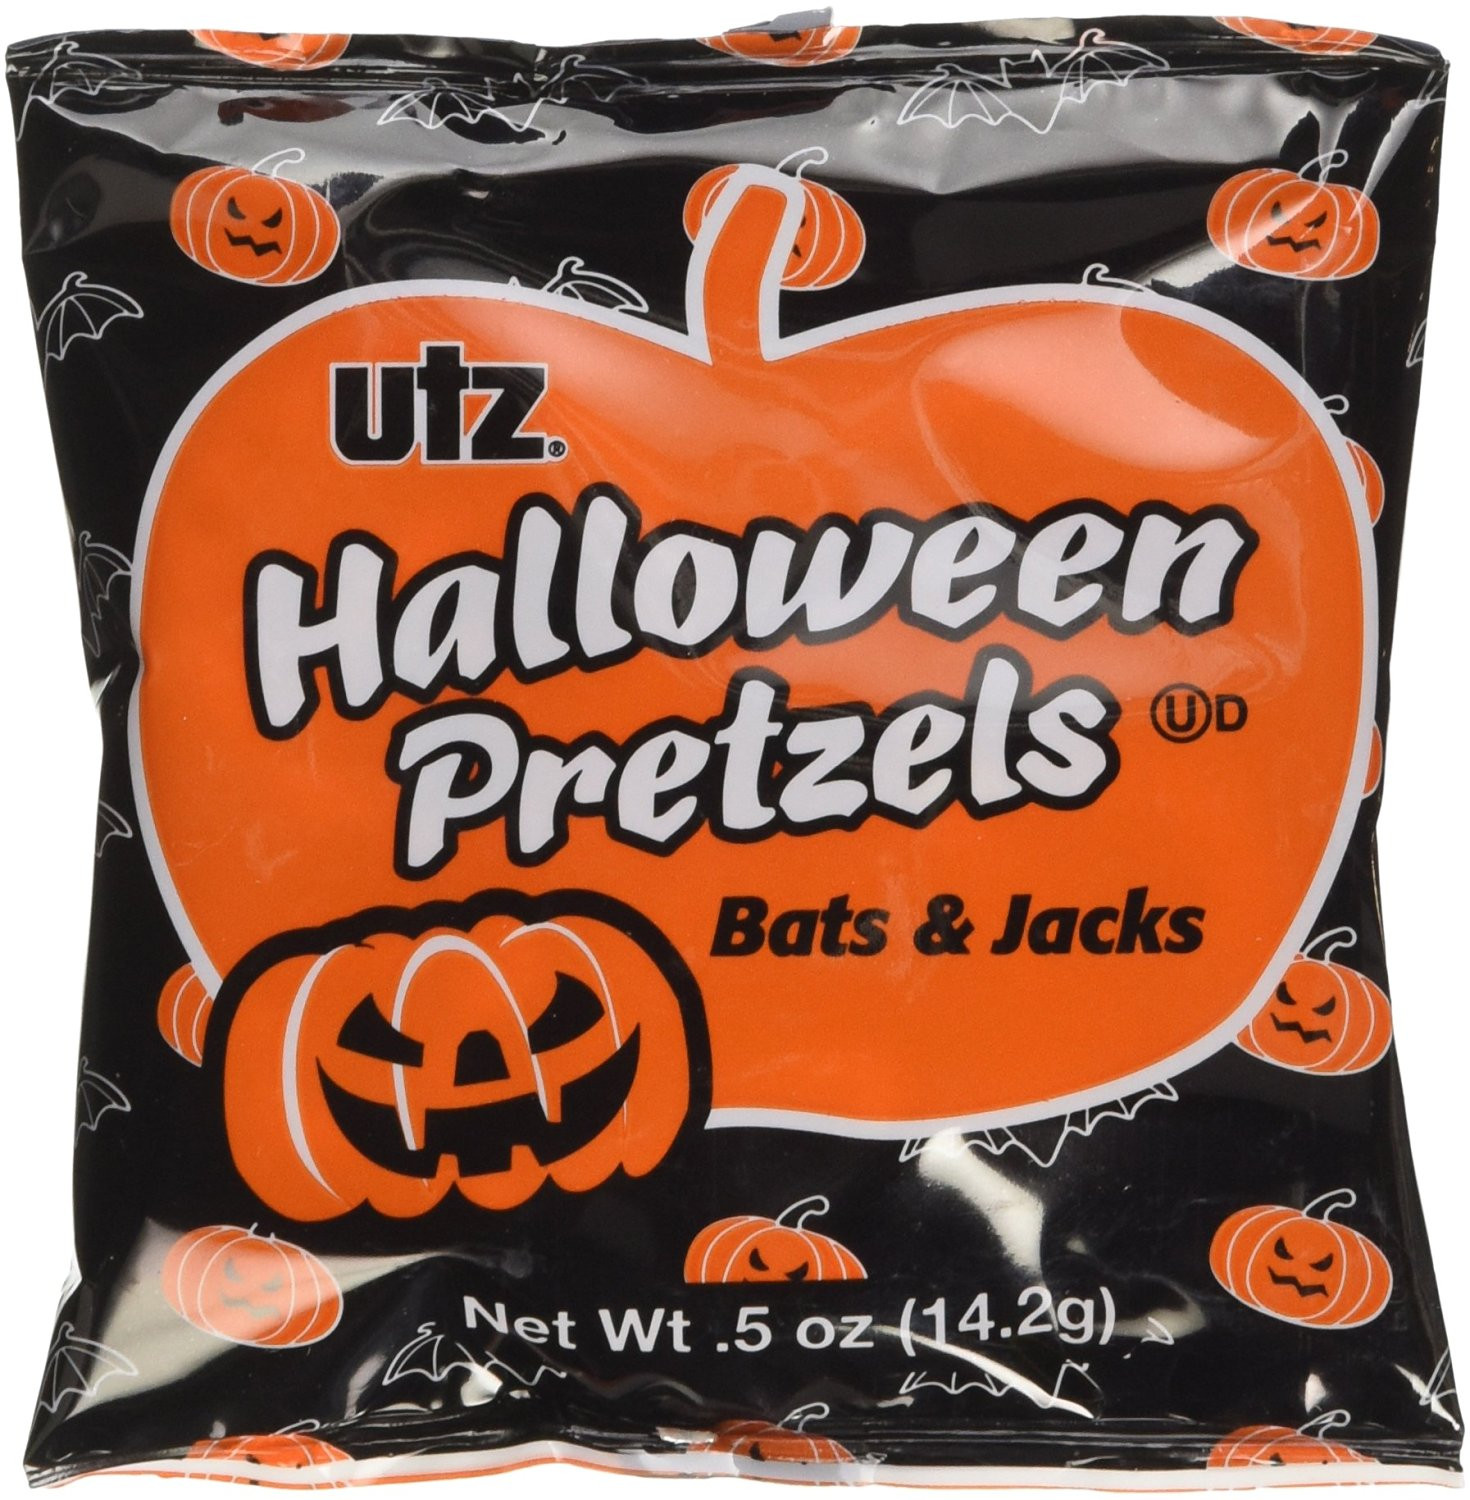 Utz Halloween Pretzels
 20 savory Halloween treats we like even better than all